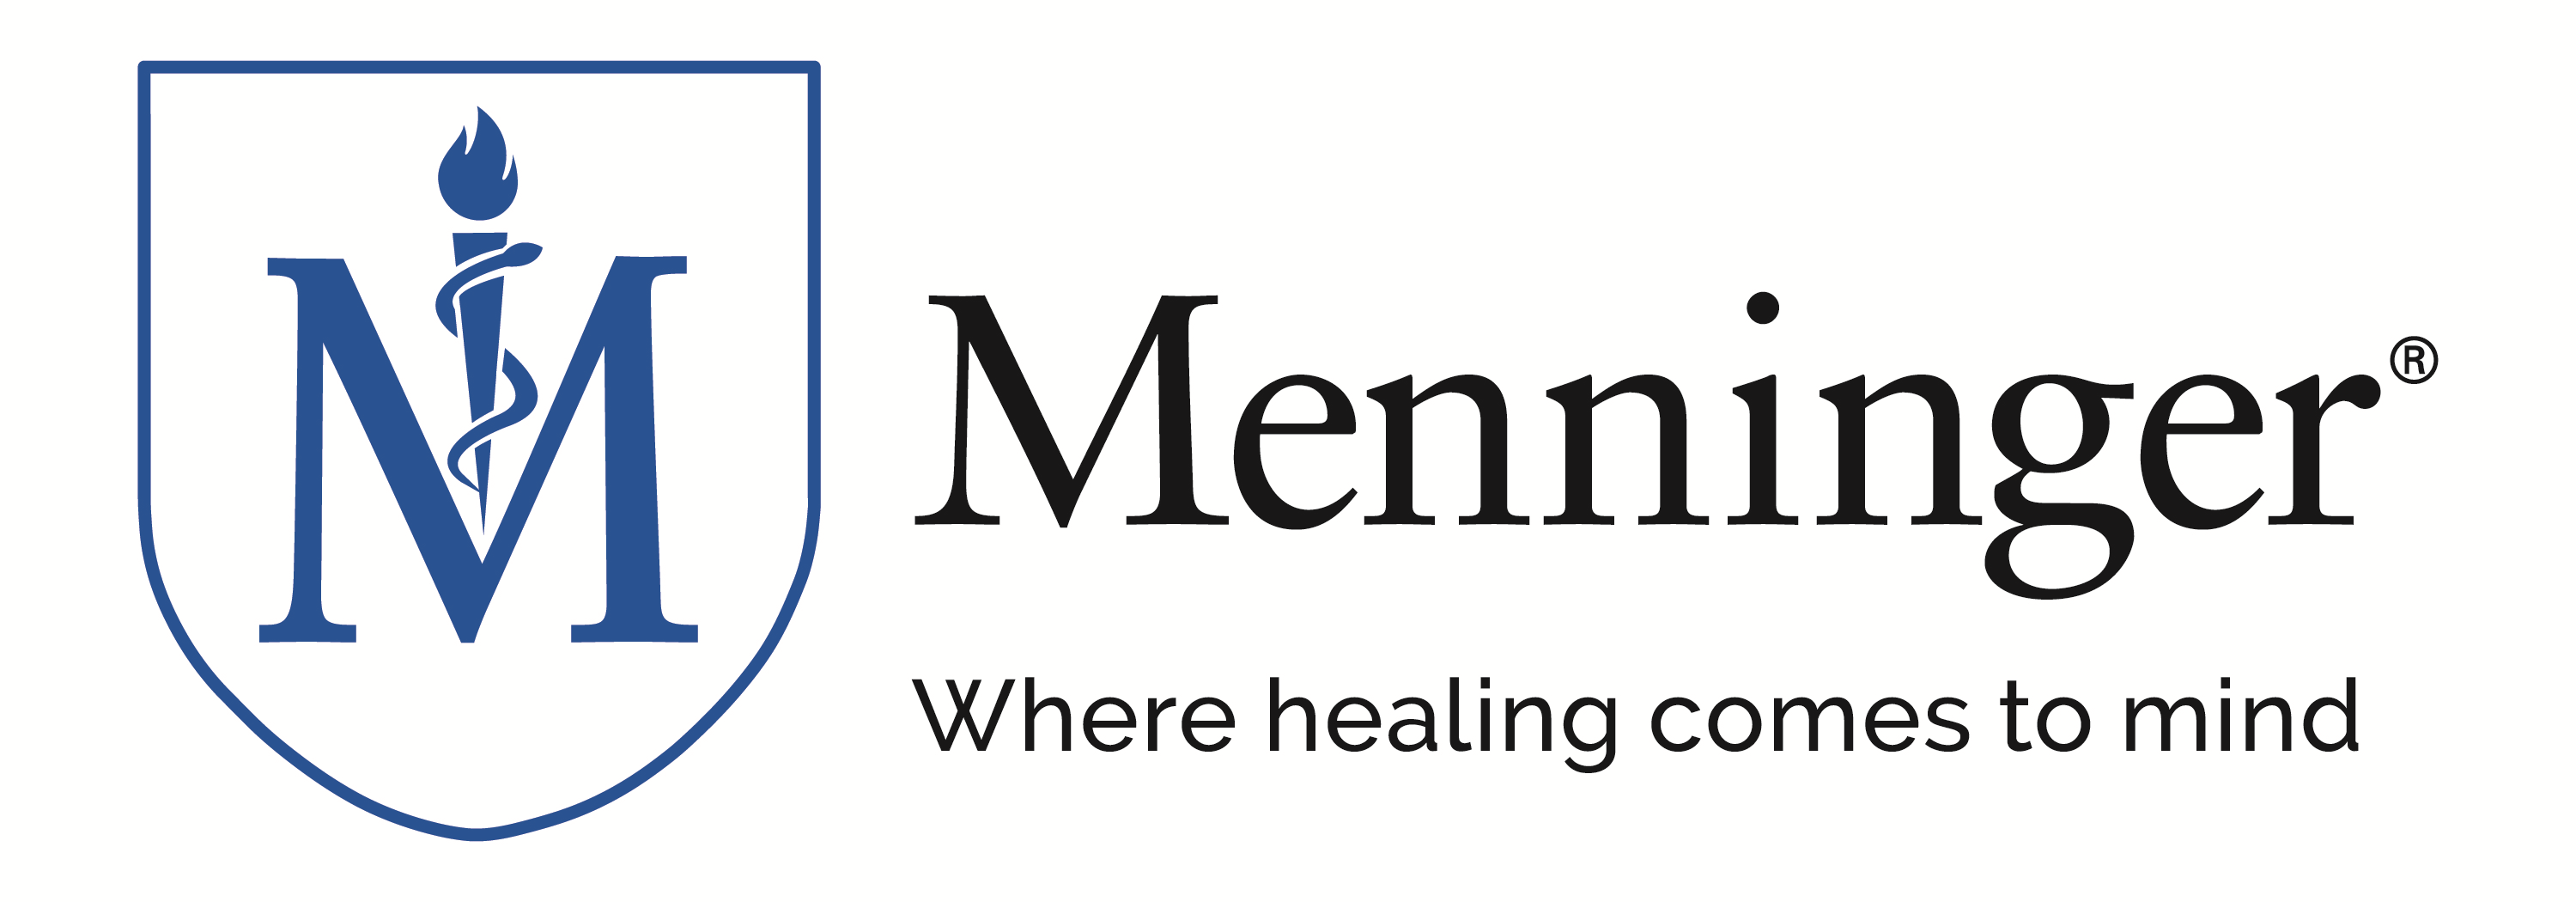 The Menninger Clinic Company Logo